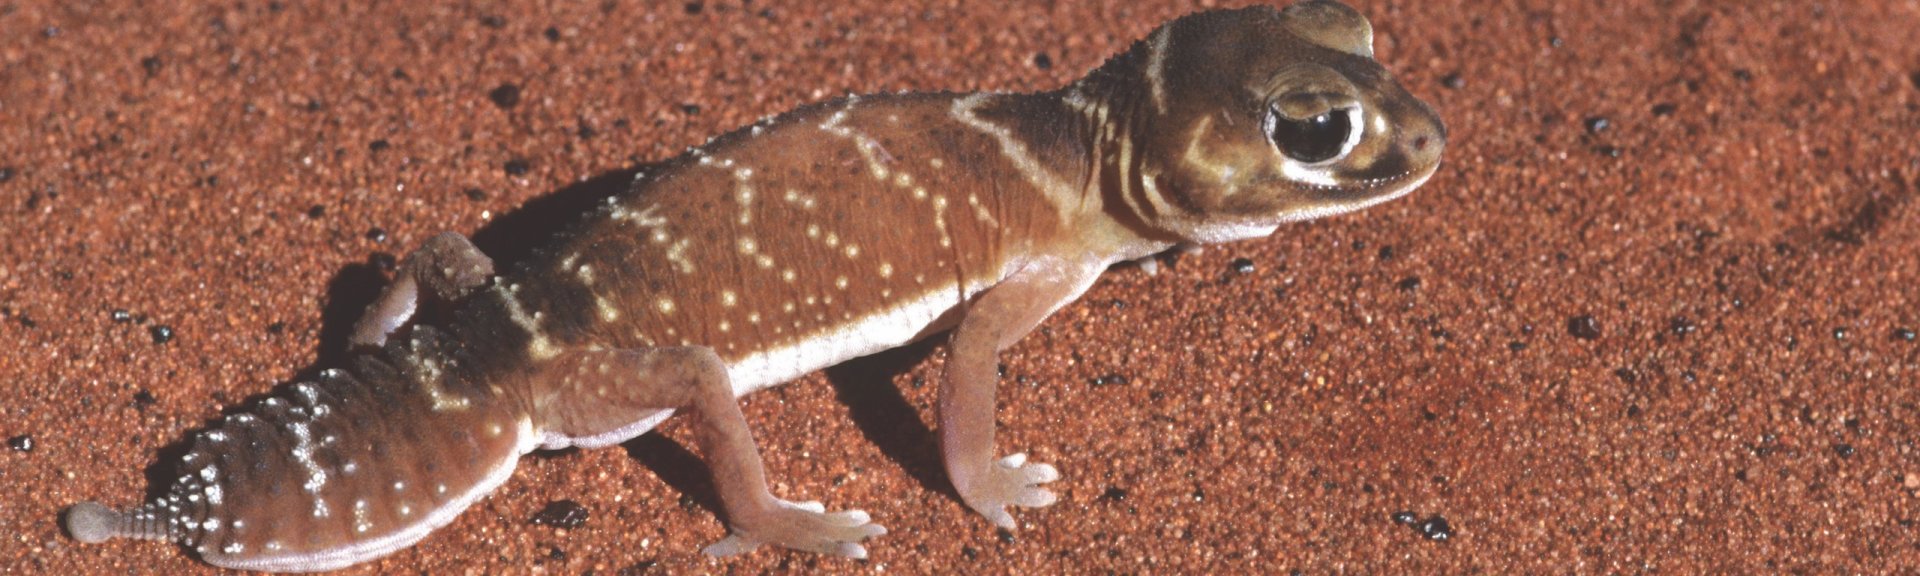 Knob-tailed gecko. Photo: Stanley Breeden